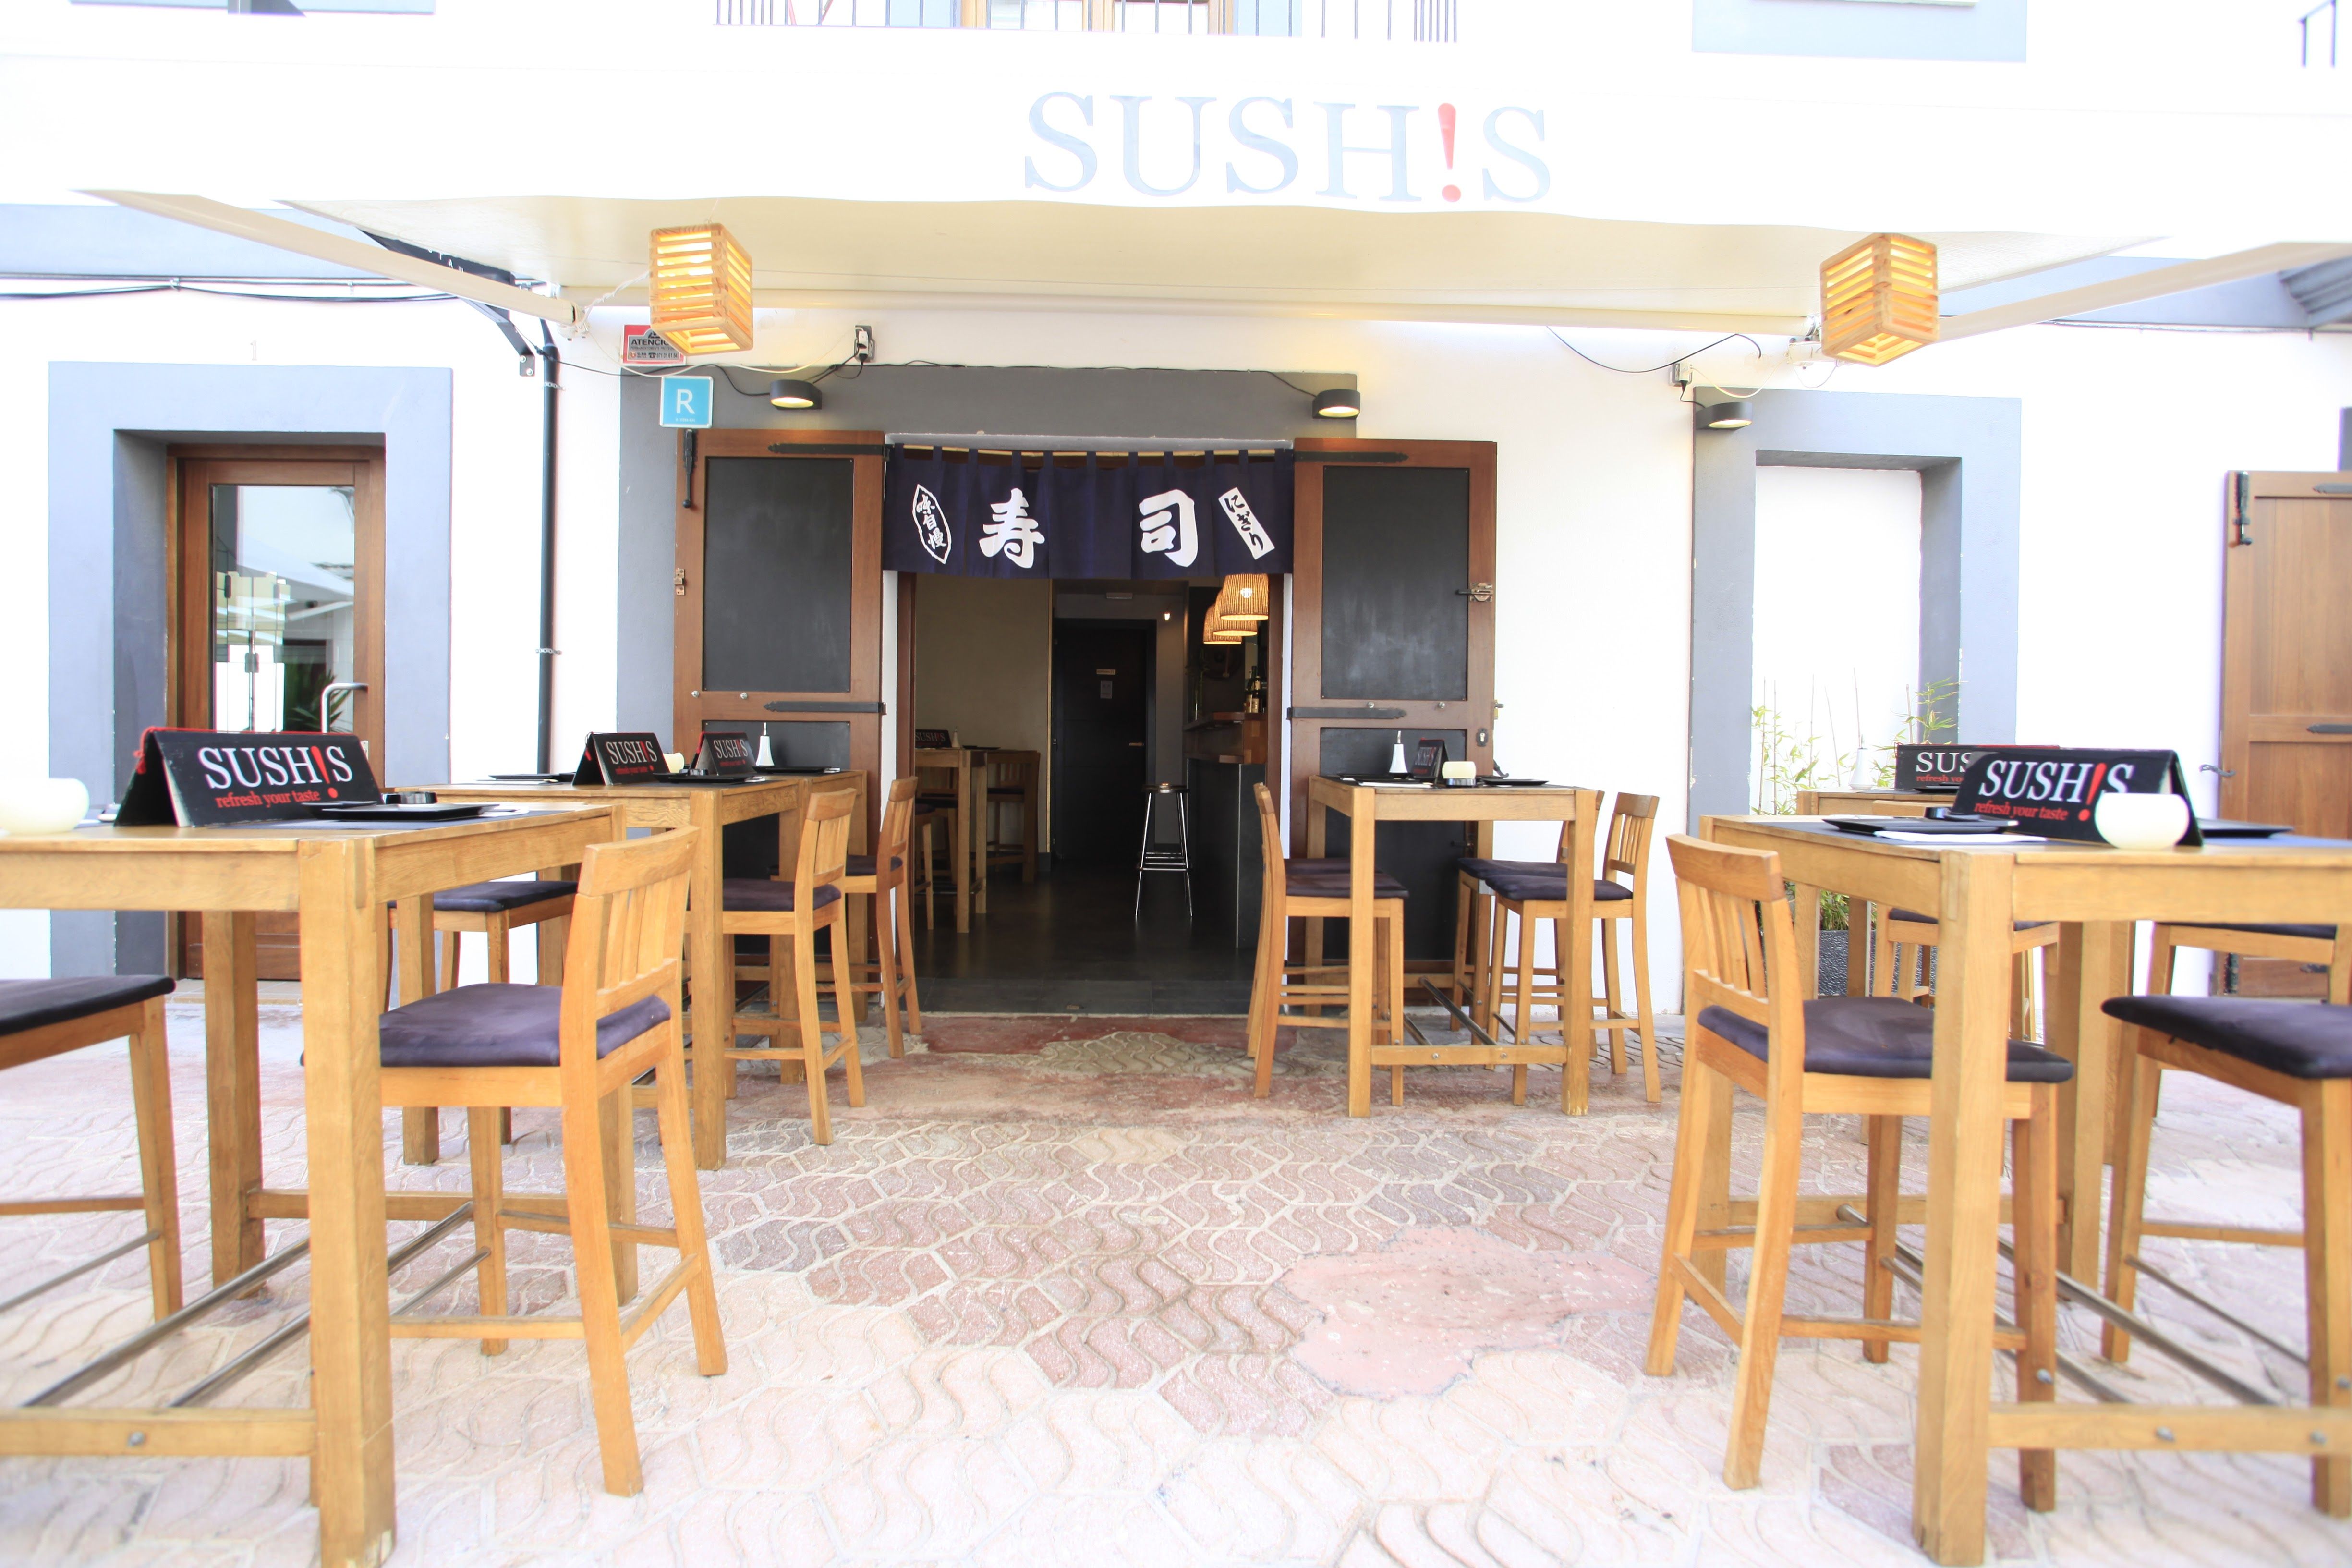 Foto 22 de Cocina japonesa en Ibiza | Sushis Ibiza